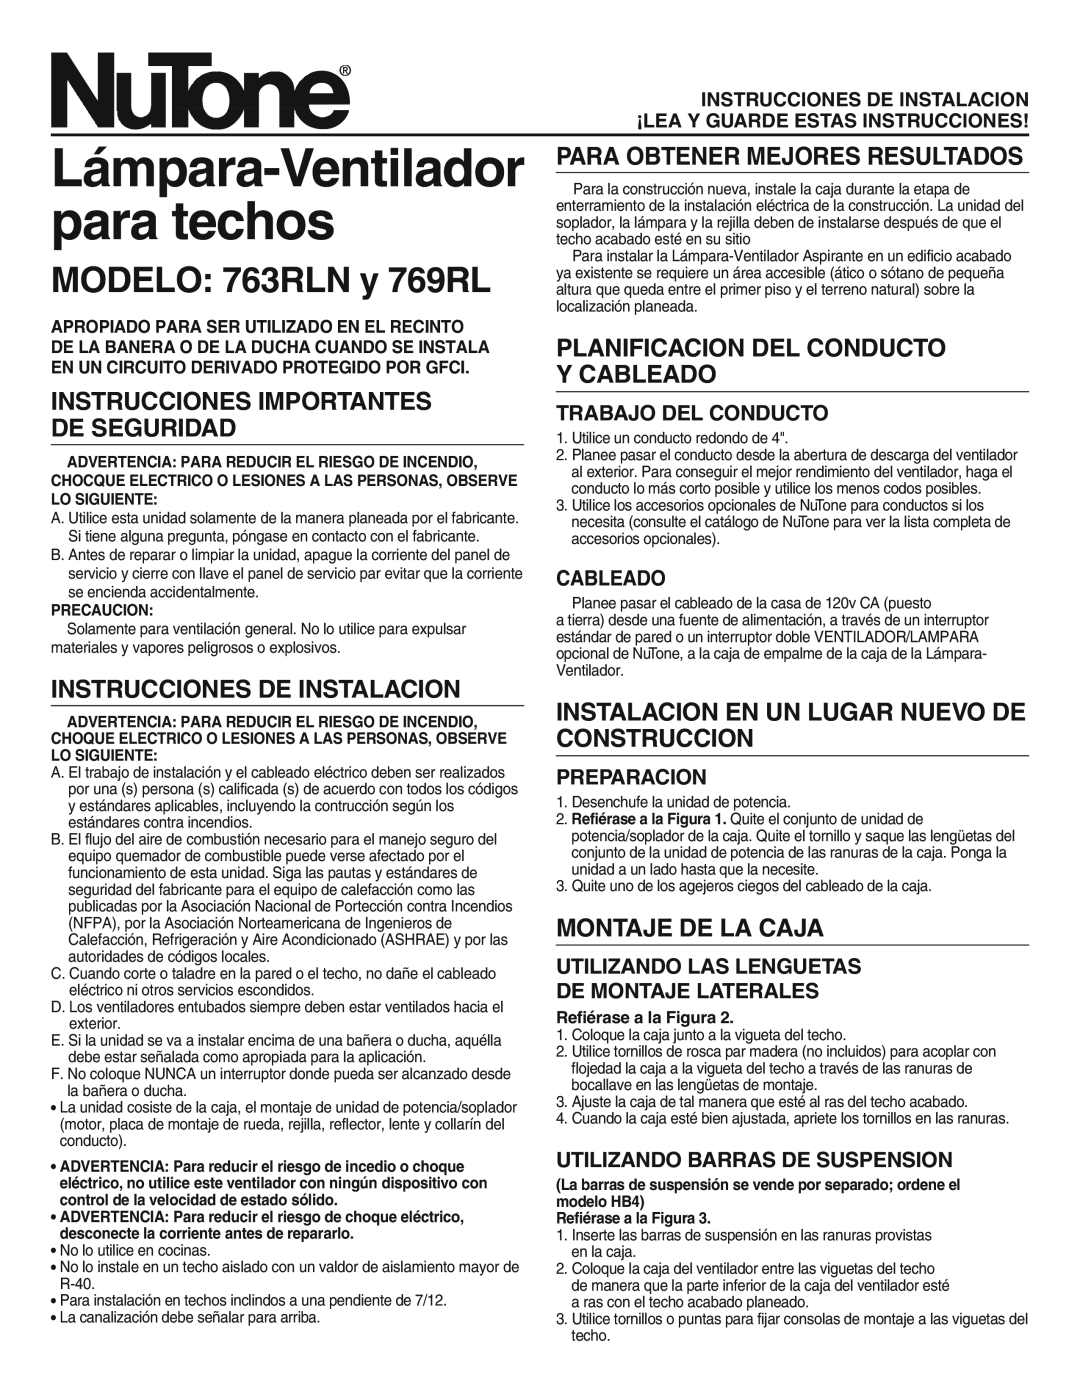 NuTone MODELO 763RLN y 769RL, Instrucciones Importantes De Seguridad, Instrucciones De Instalacion, Montaje De La Caja 